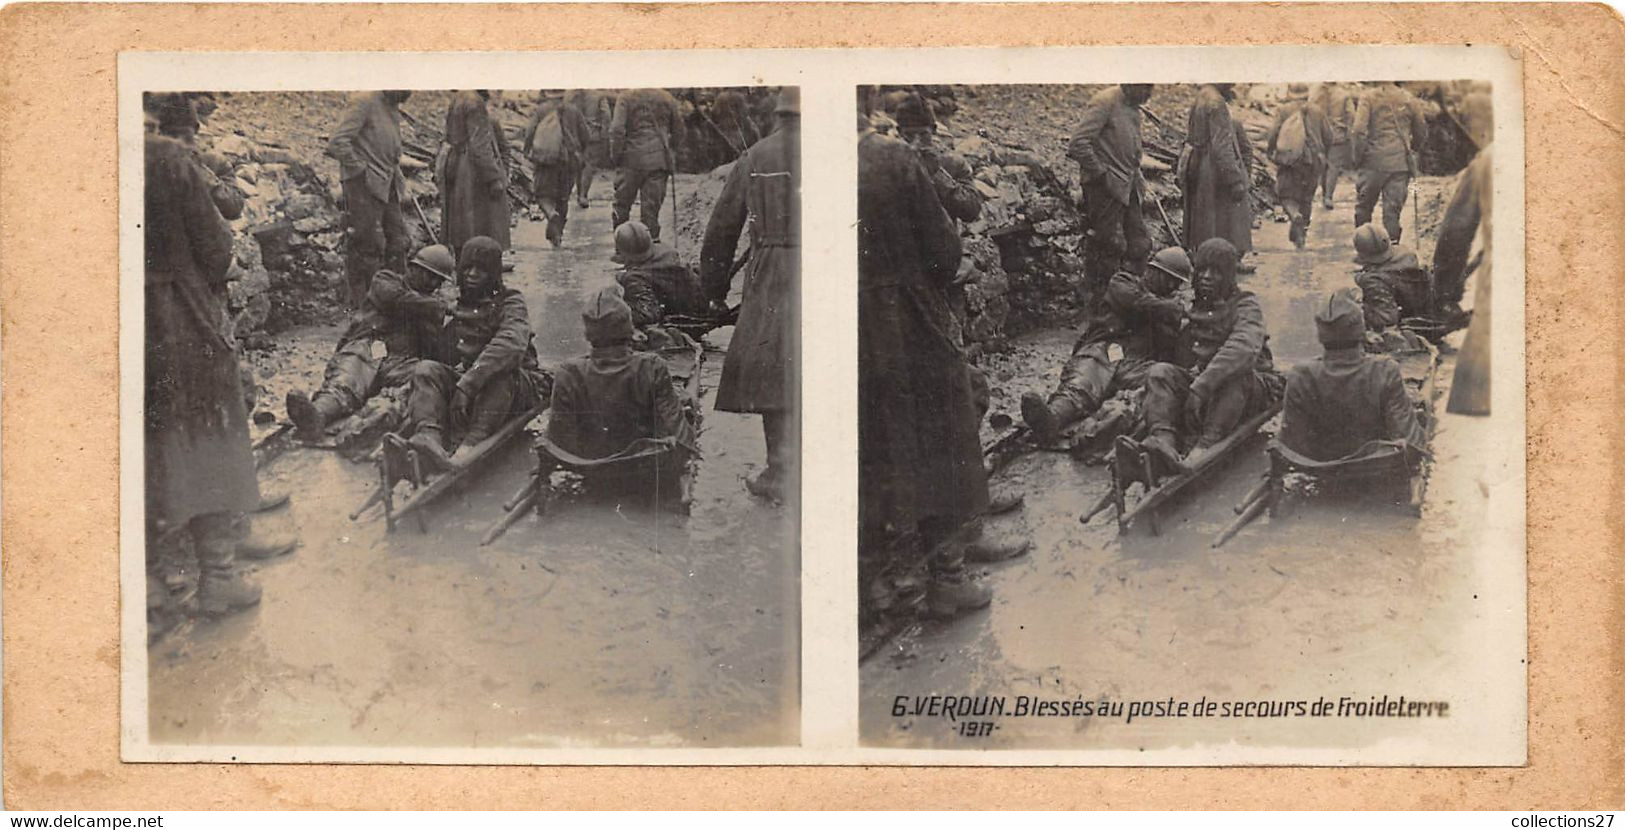 55-VERDUN- 1917 BLESSES AU POSTE DE SECOURS DE FROIDETERRE - Stereoscoop